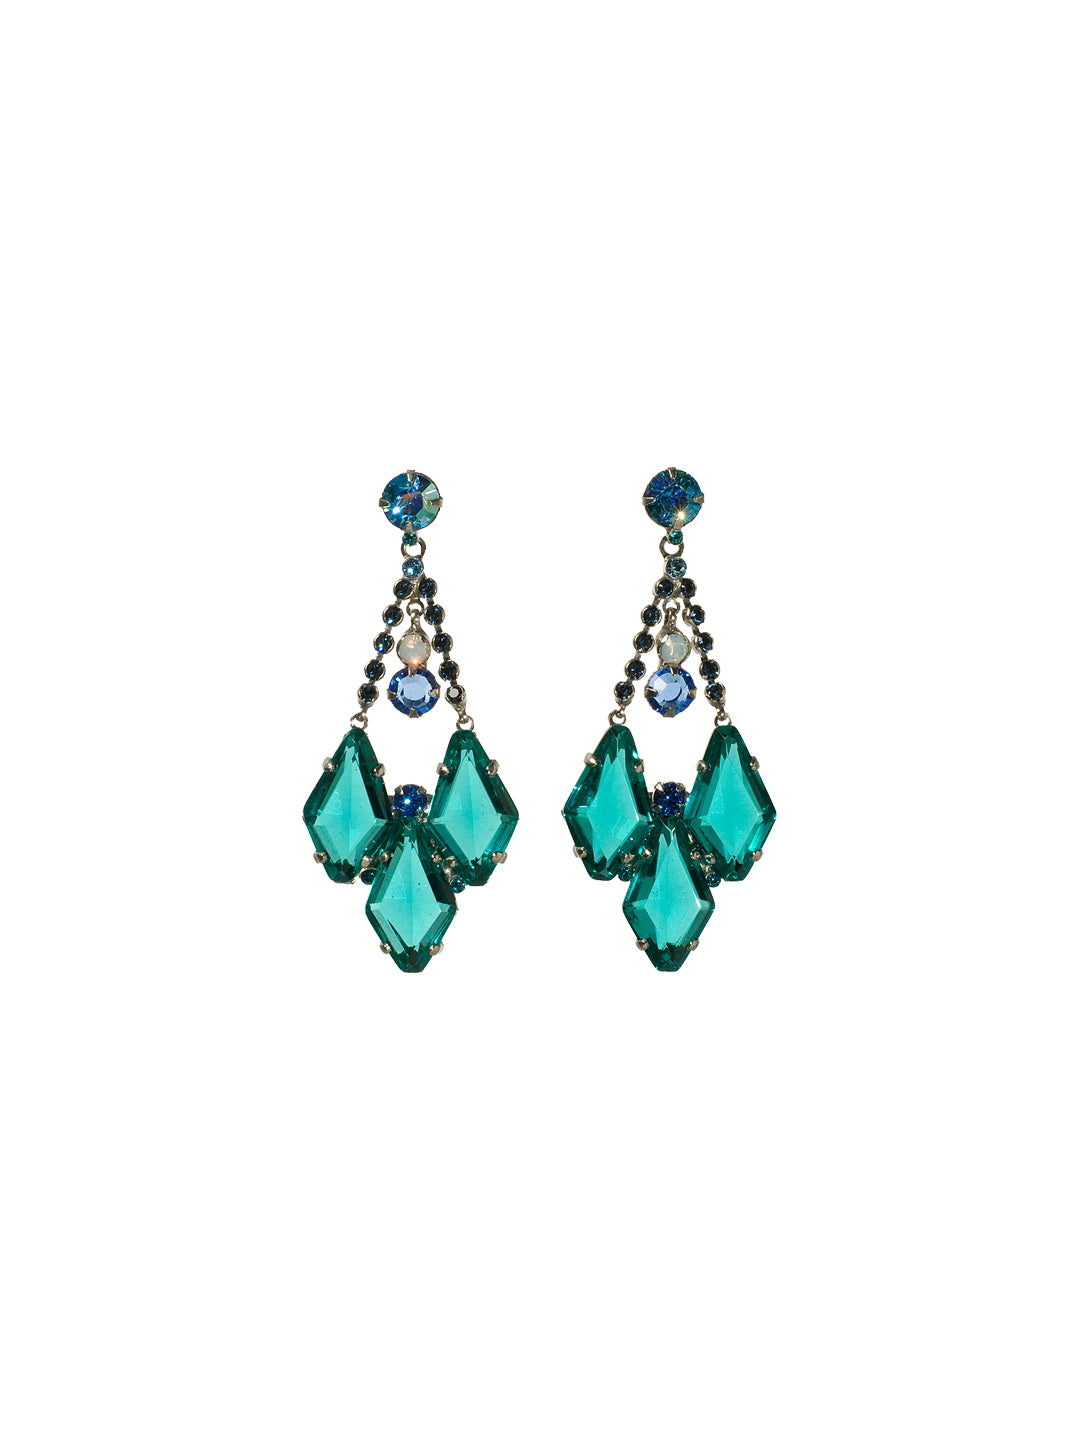 Fit For A Queen Crystal Chandelier Earring Dangle Earrings - ECG61ASEB